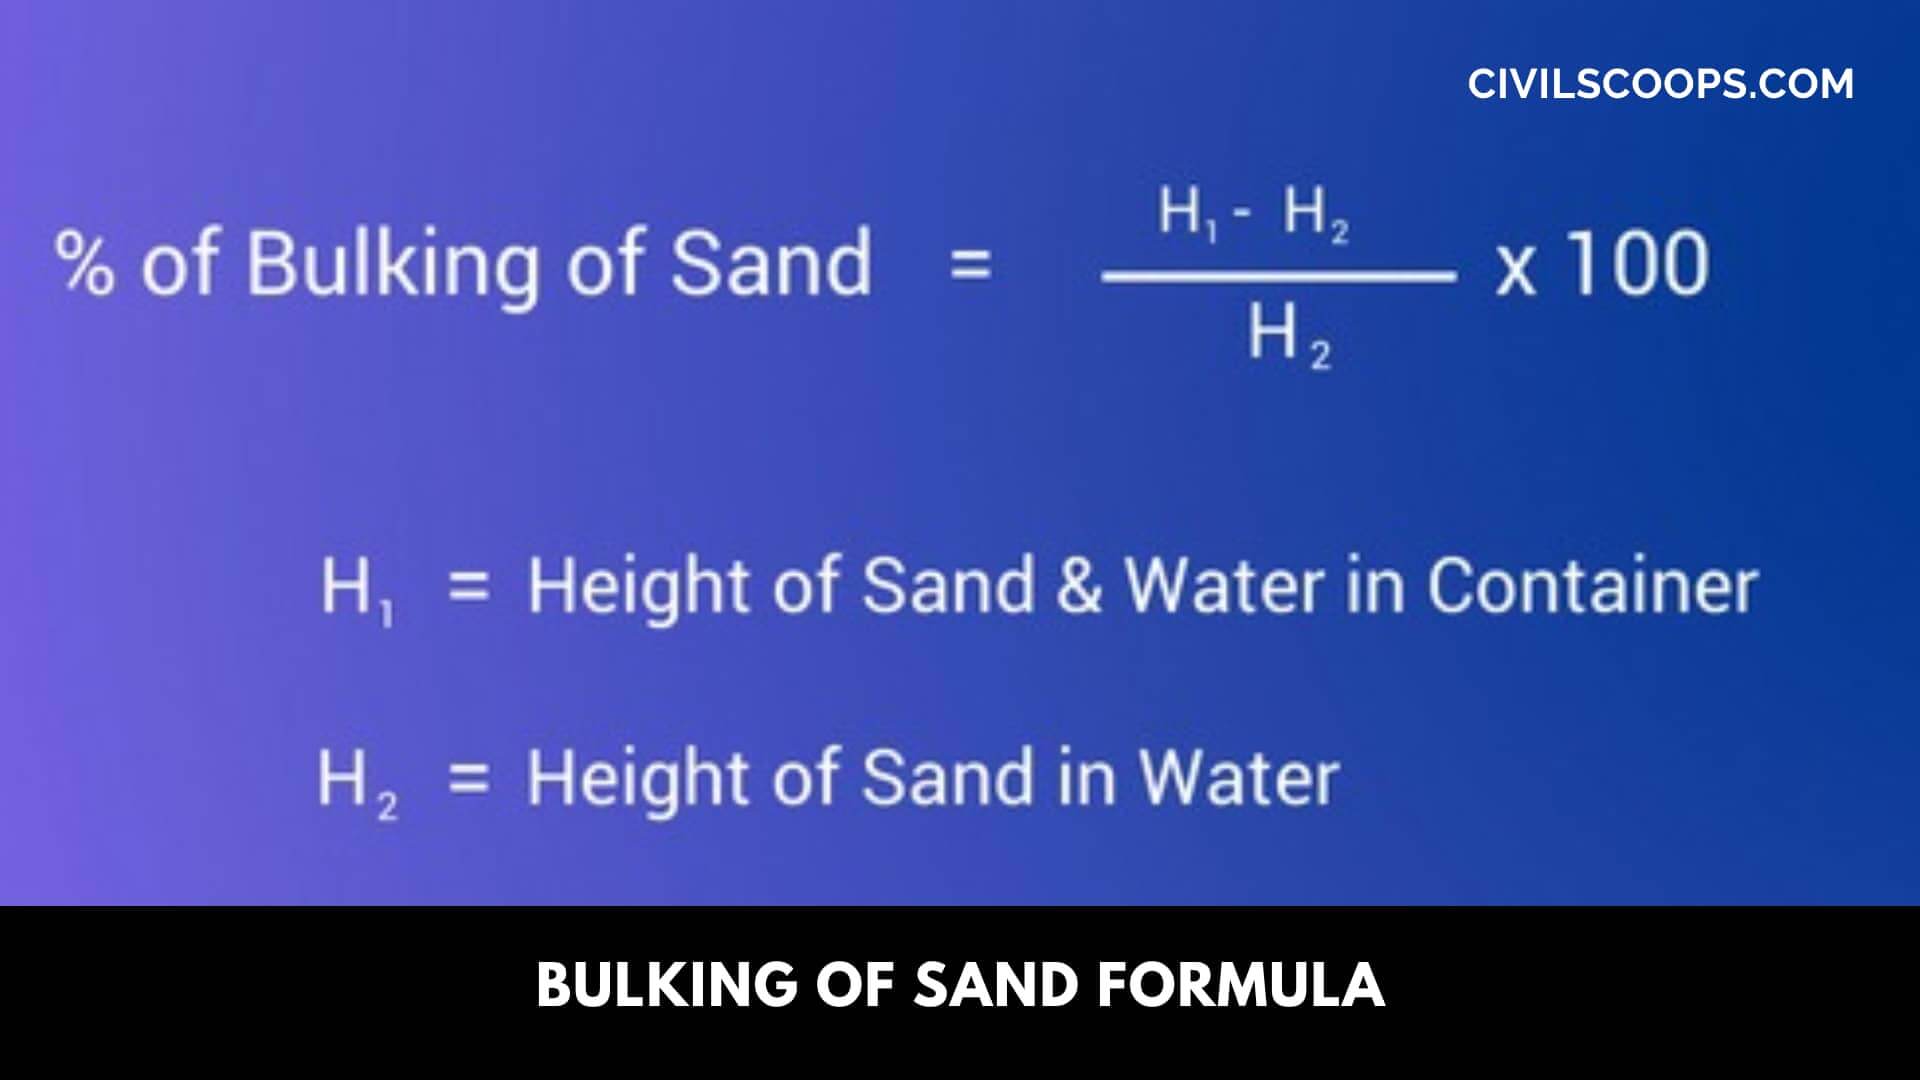 Bulking of Sand Formula